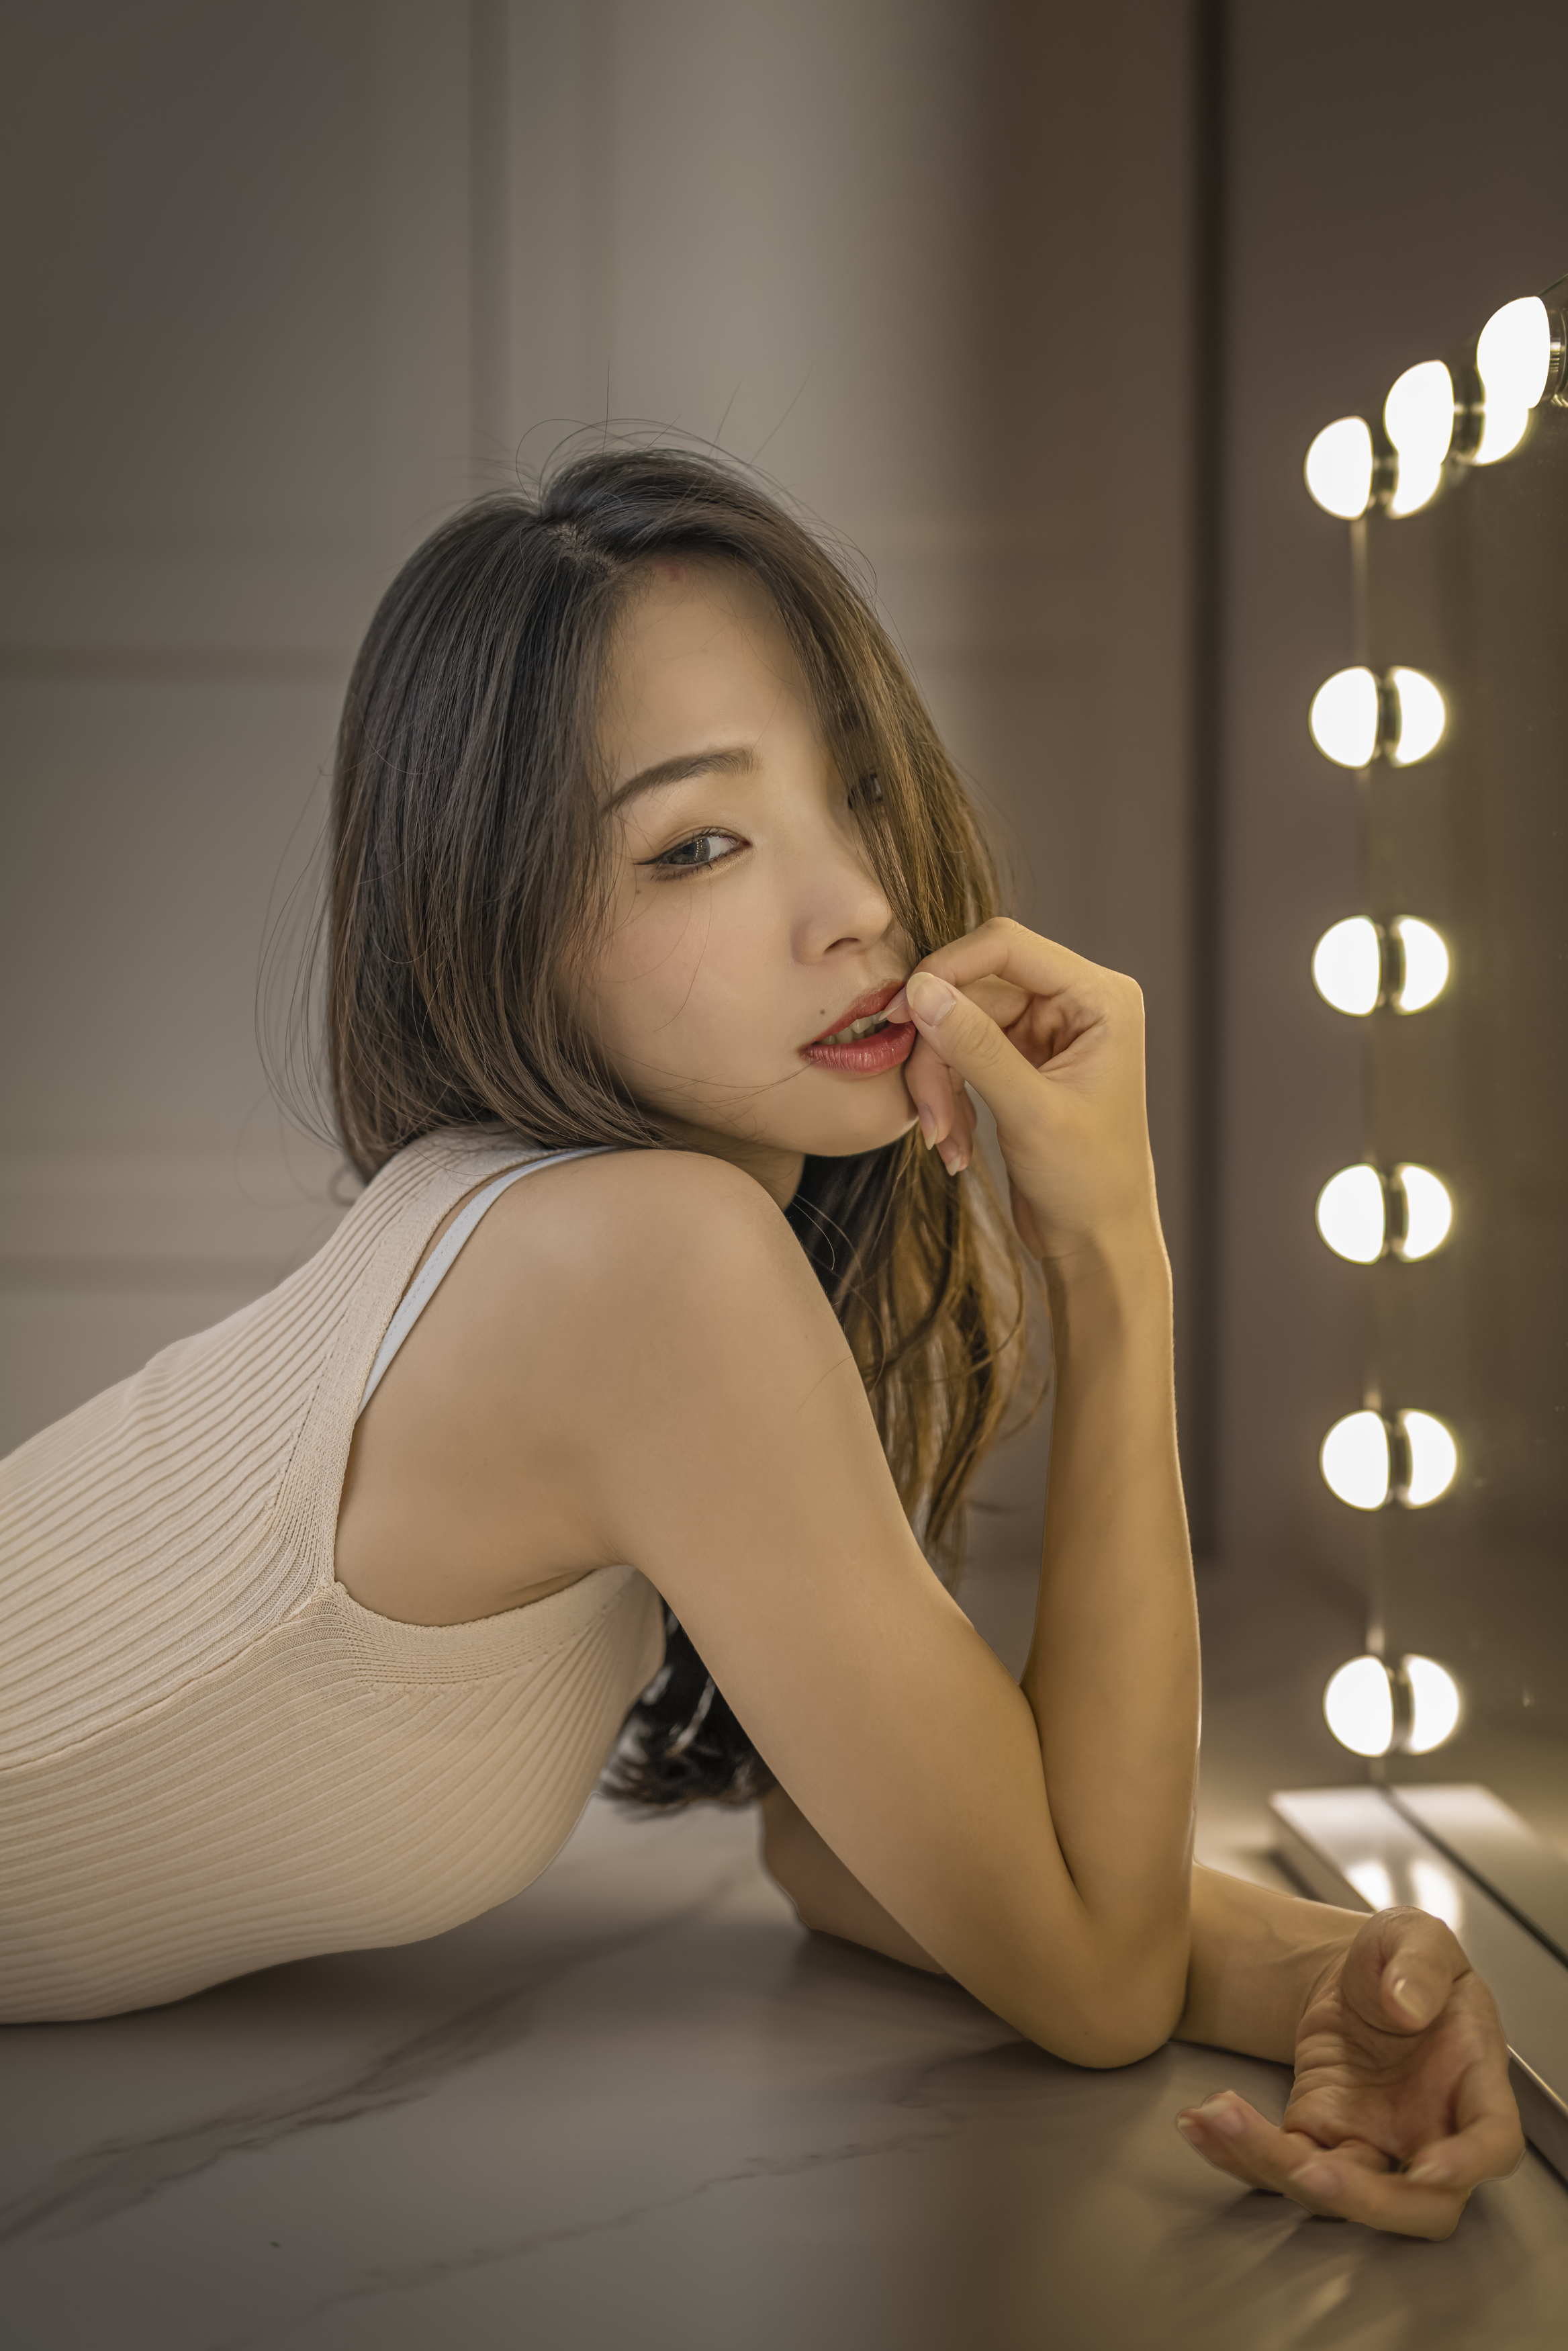 Chou Hsuan Yung Women Brunette Long Hair Asian Makeup Mirror Light Bulb 2335x3500